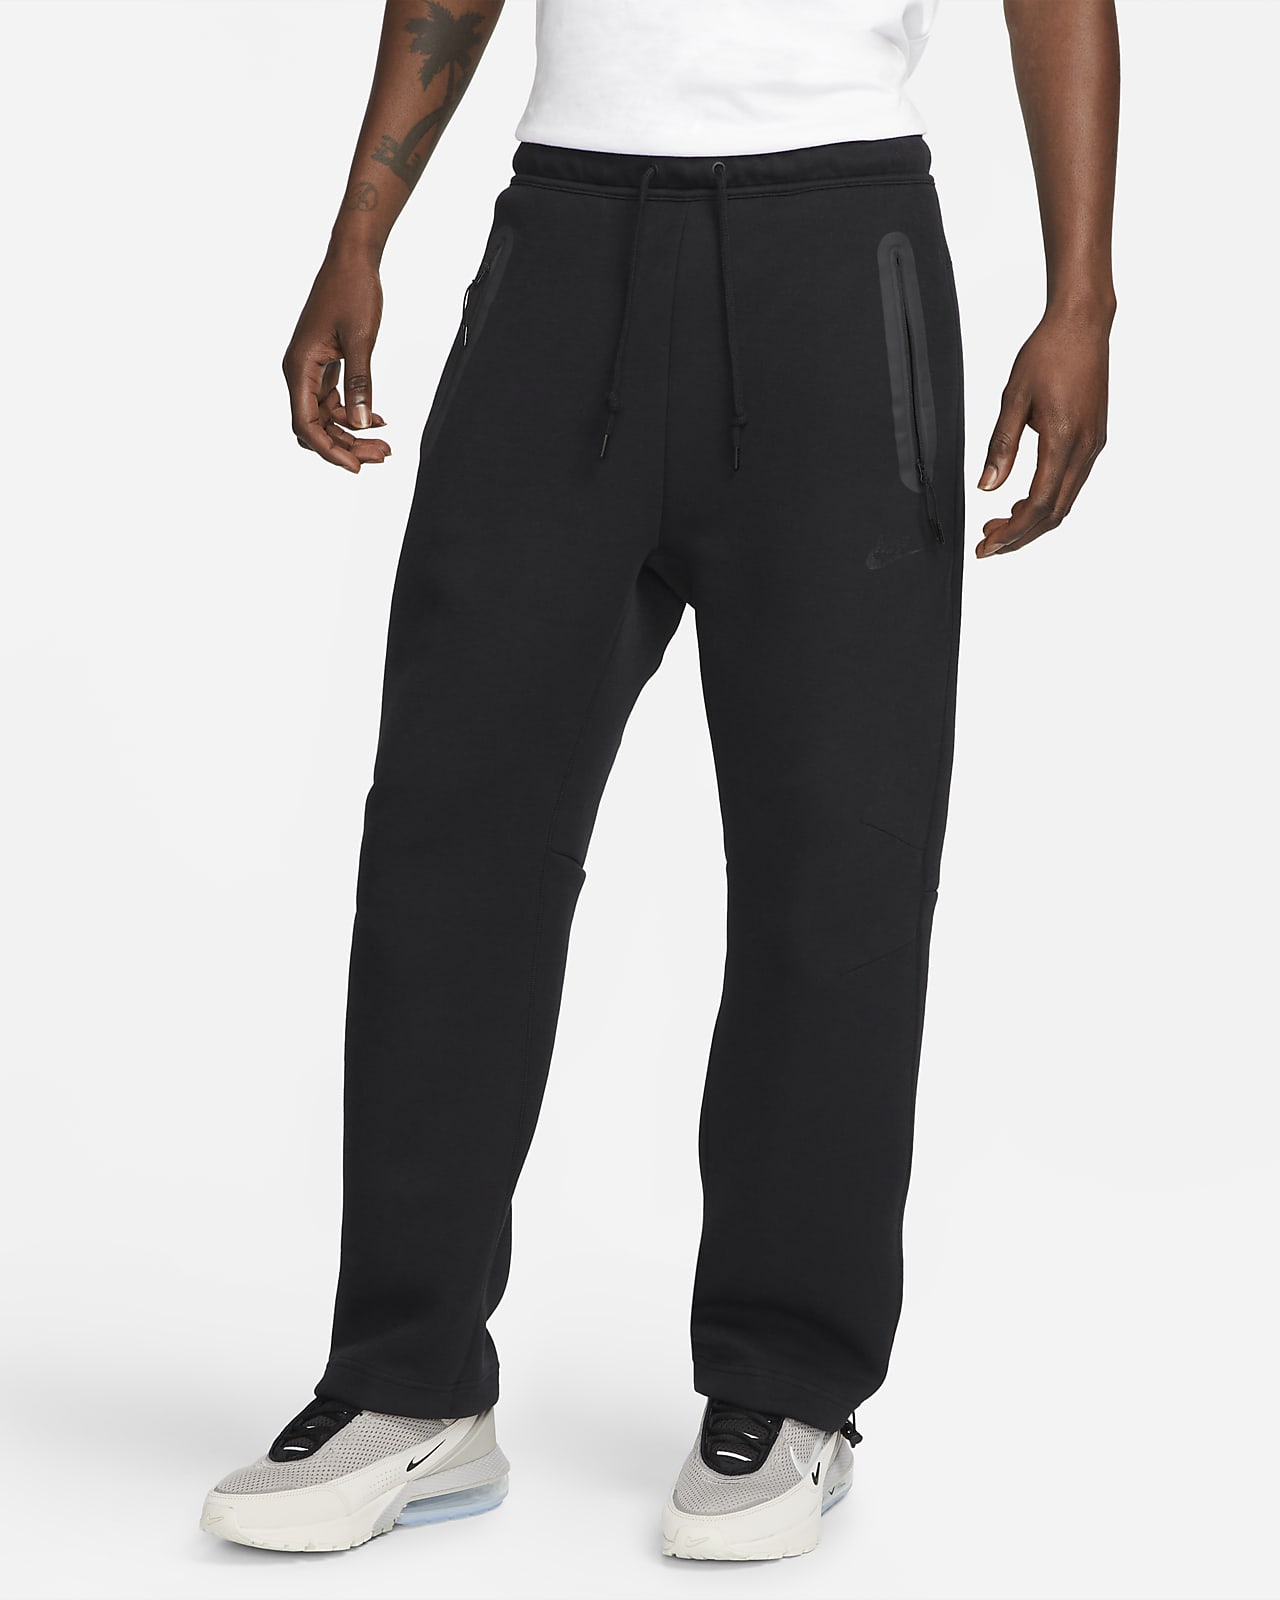 Ανδρικό παντελόνι φόρμας με ανοιχτό τελείωμα Nike Sportswear Tech Fleece